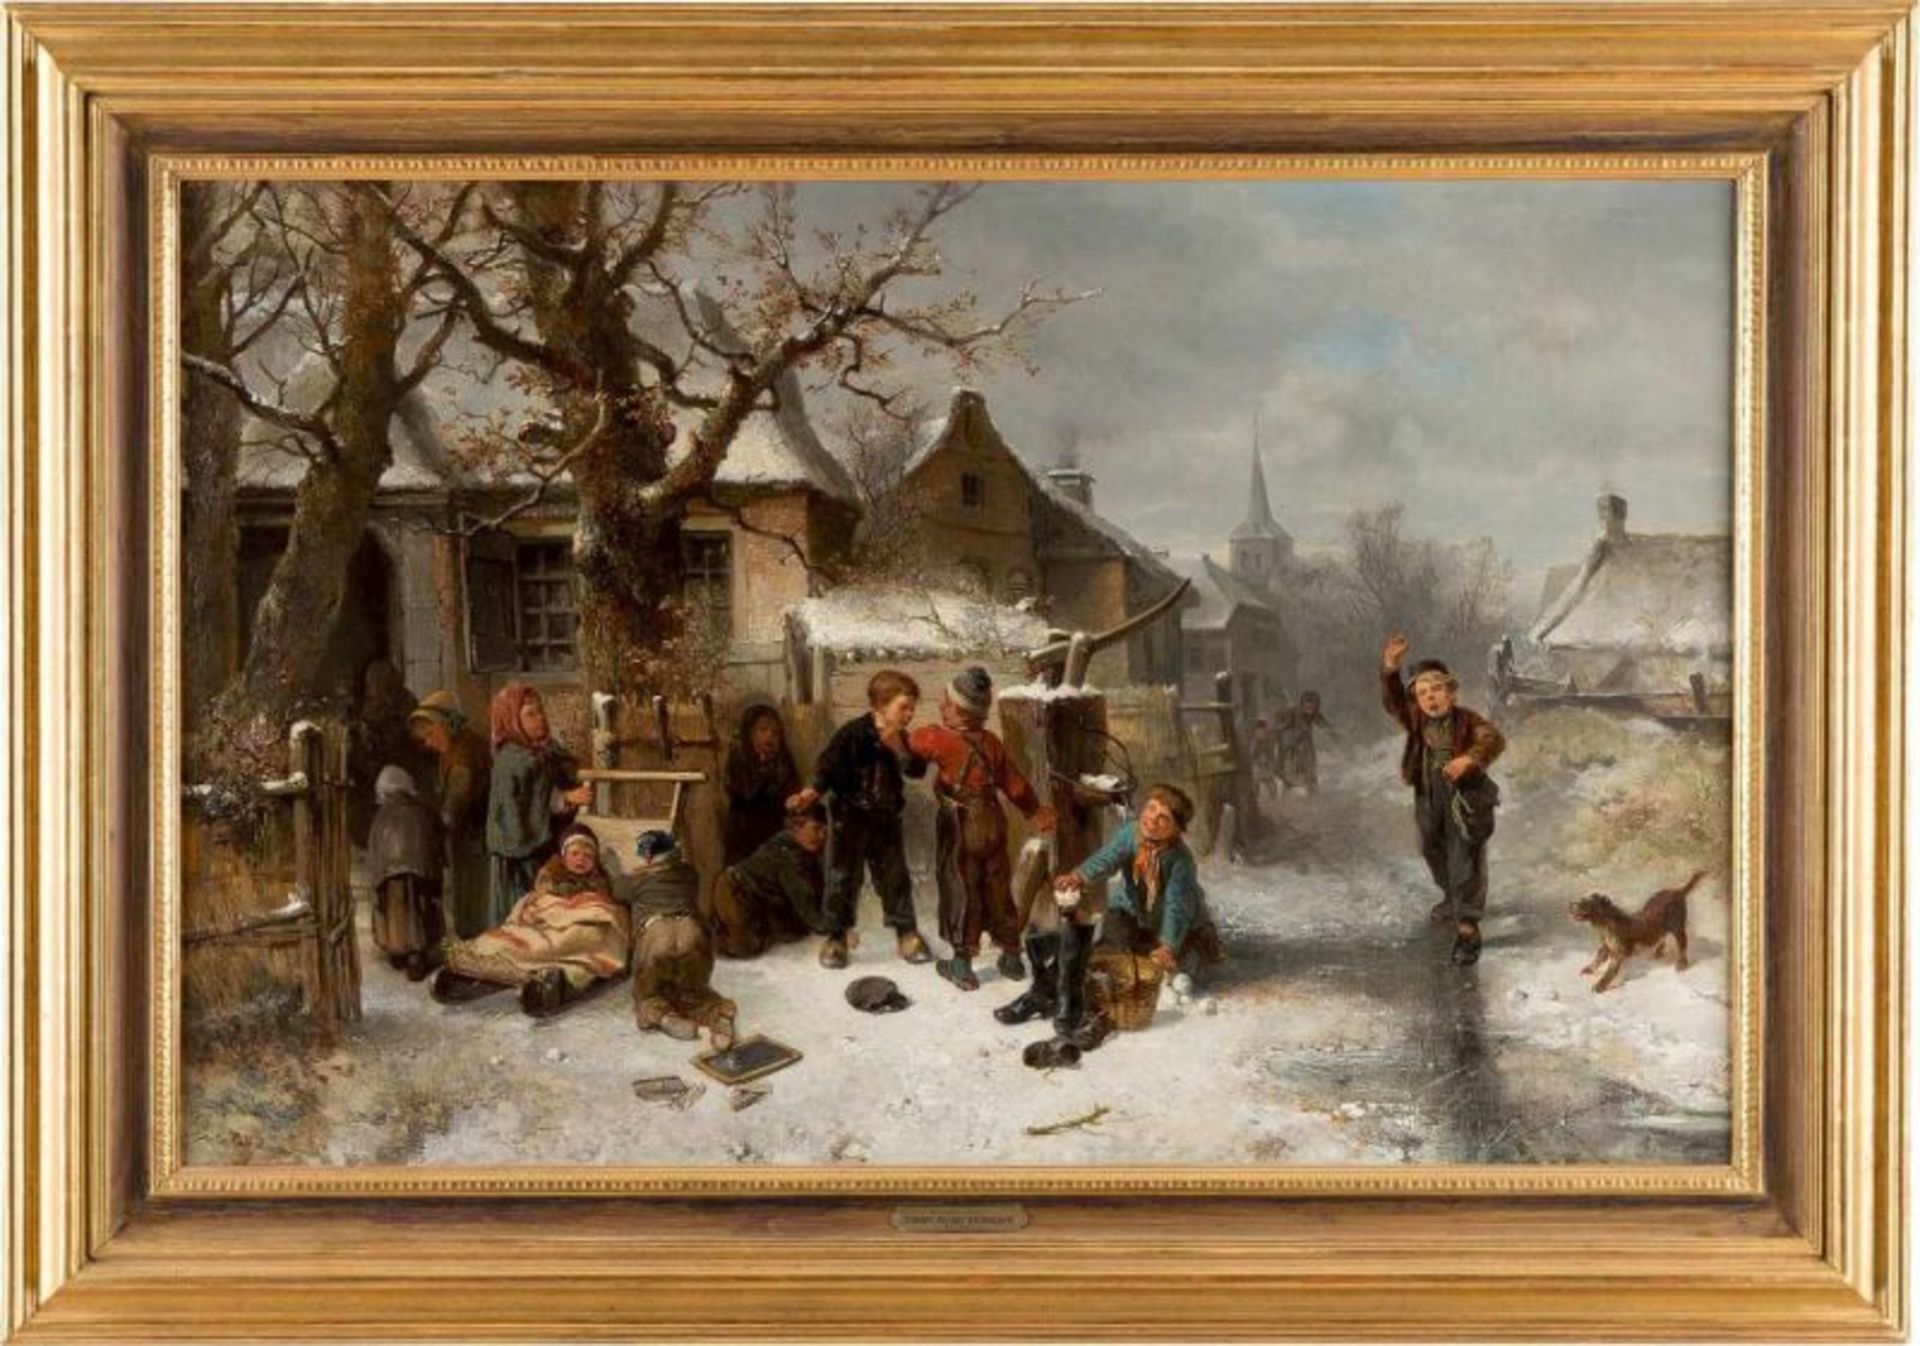 JOHAN MARI TEN KATE 1831 Den Haag - 1910 Driebergen 'WINTER FUN' ('WINTERSPAß') Öl auf Leinwand. - Bild 2 aus 3